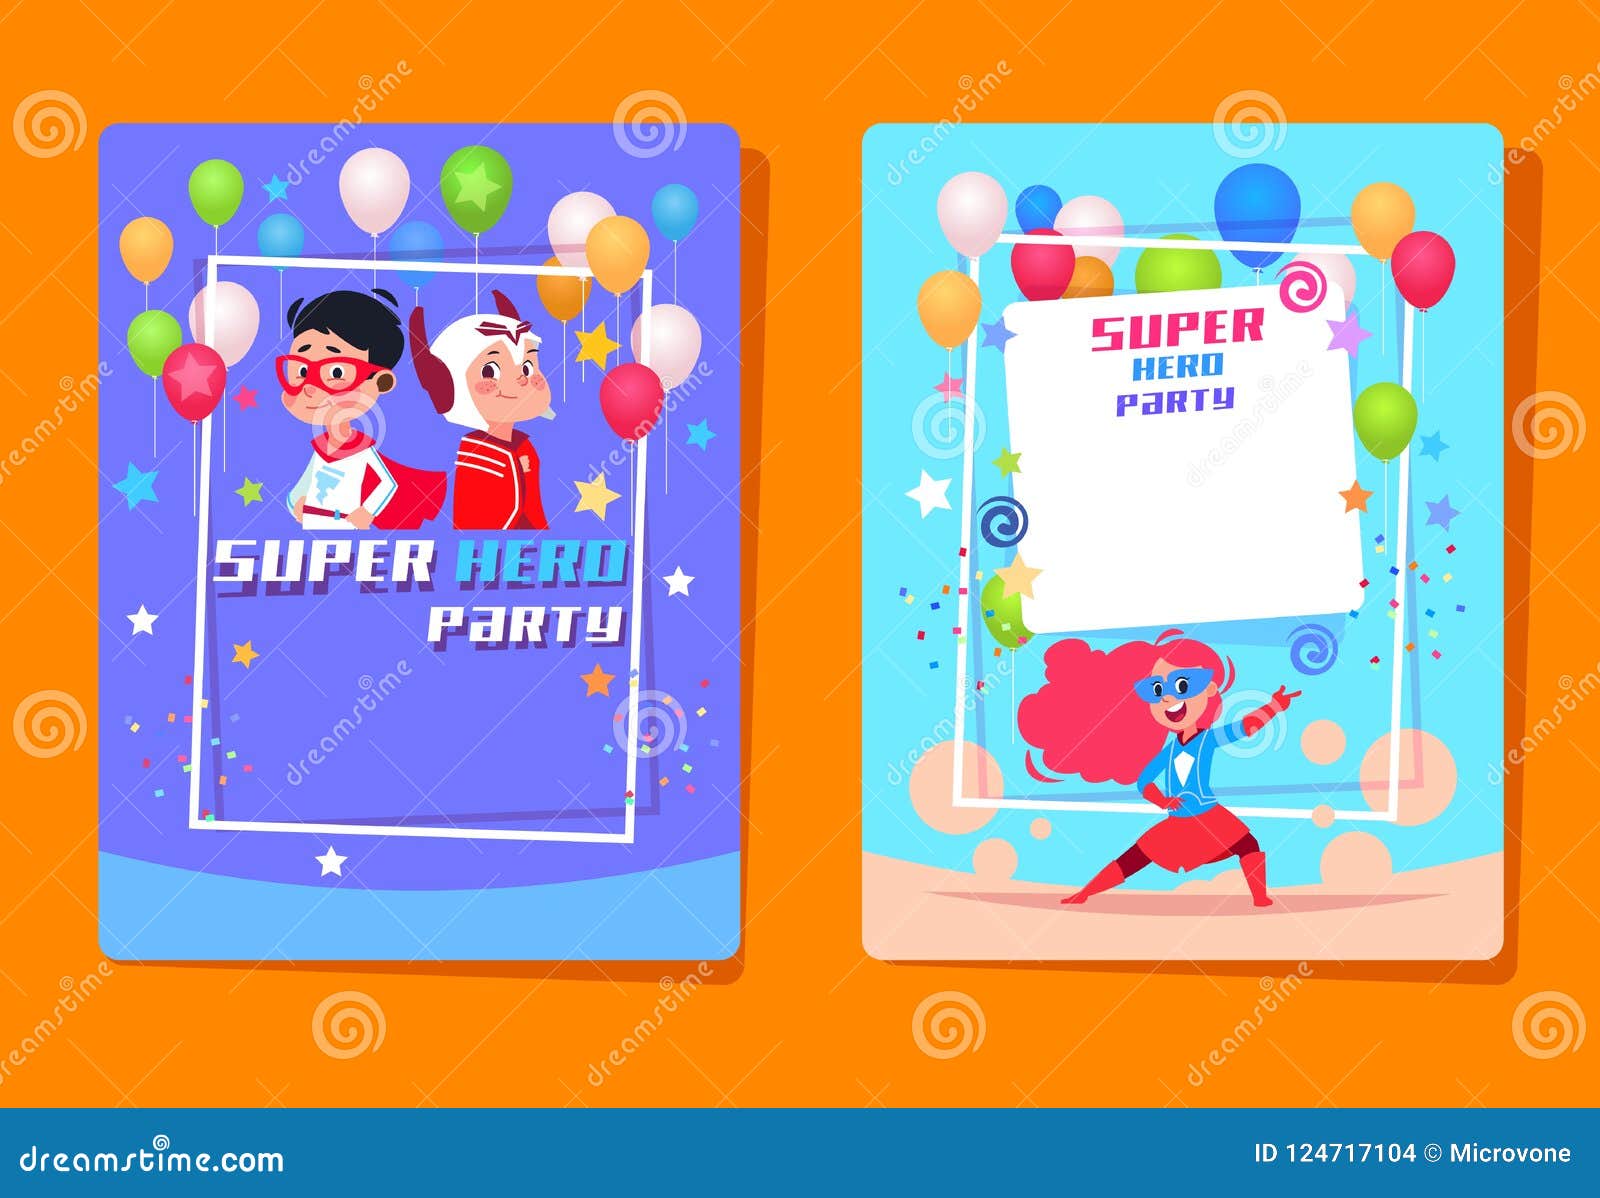 Carte d'invitation anniversaire enfant masque super héros - Fête